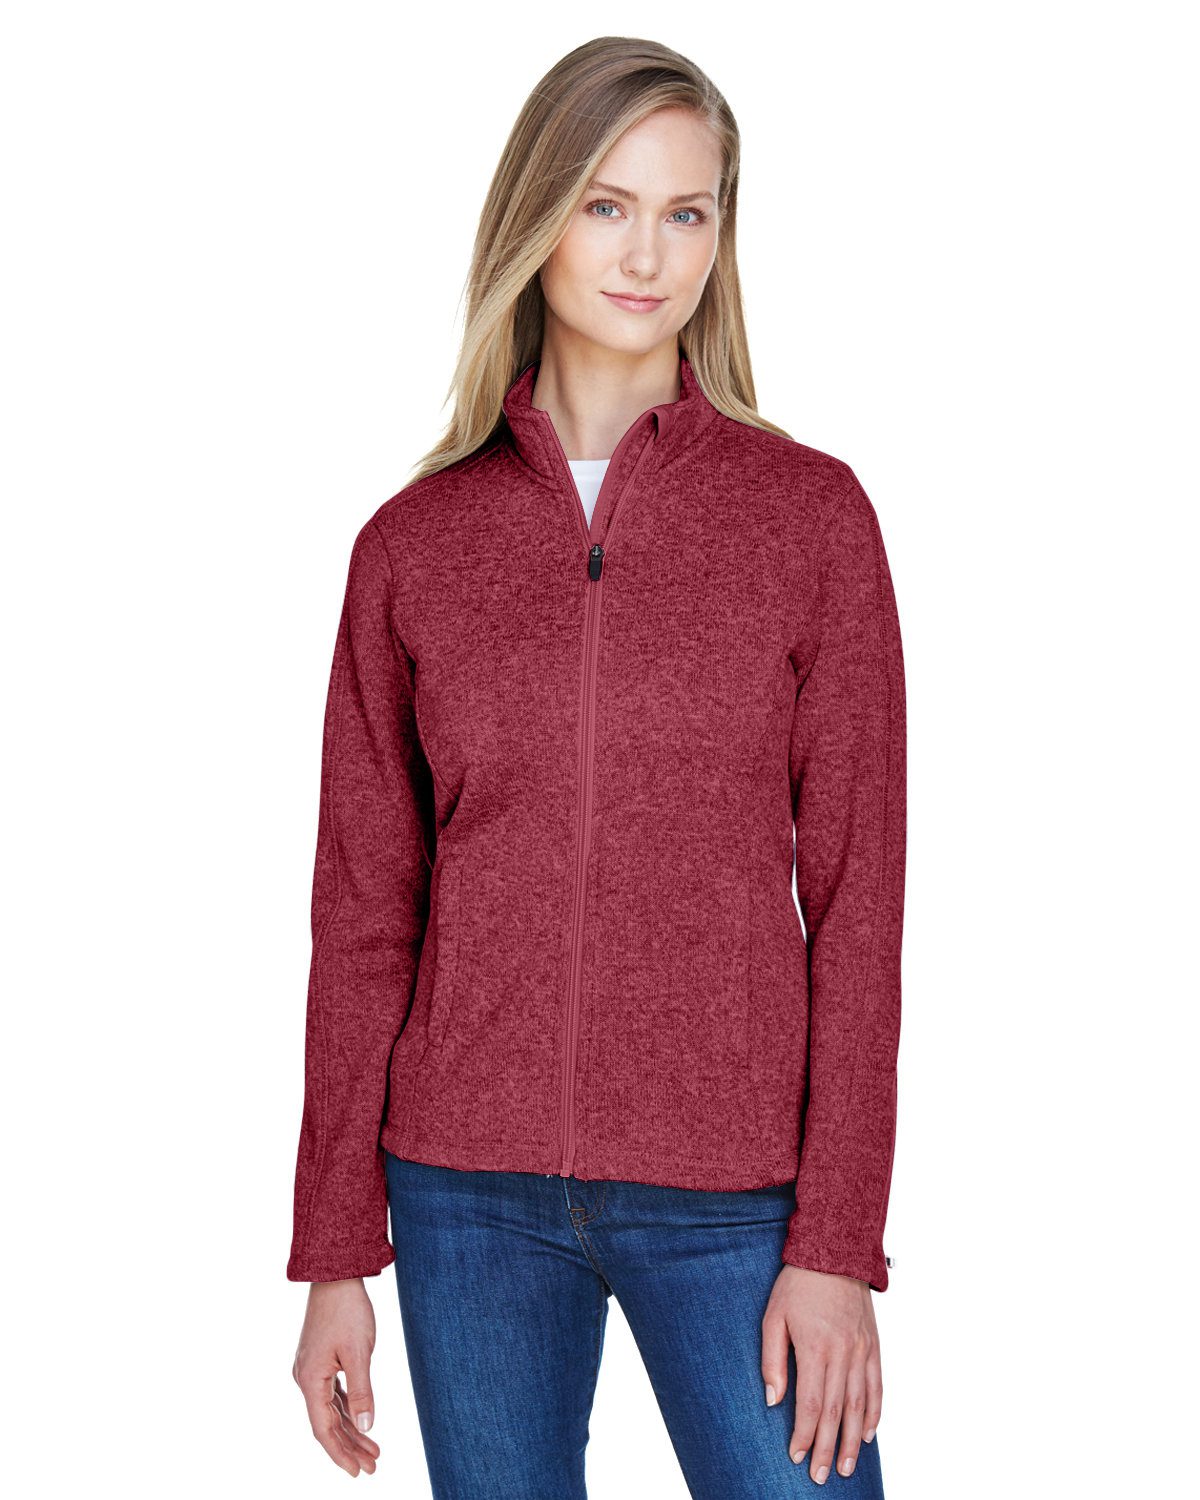 Devon & Jones Ladies' Bristol Full-Zip Sweater Fleece Jacket #DG793W Red Heather